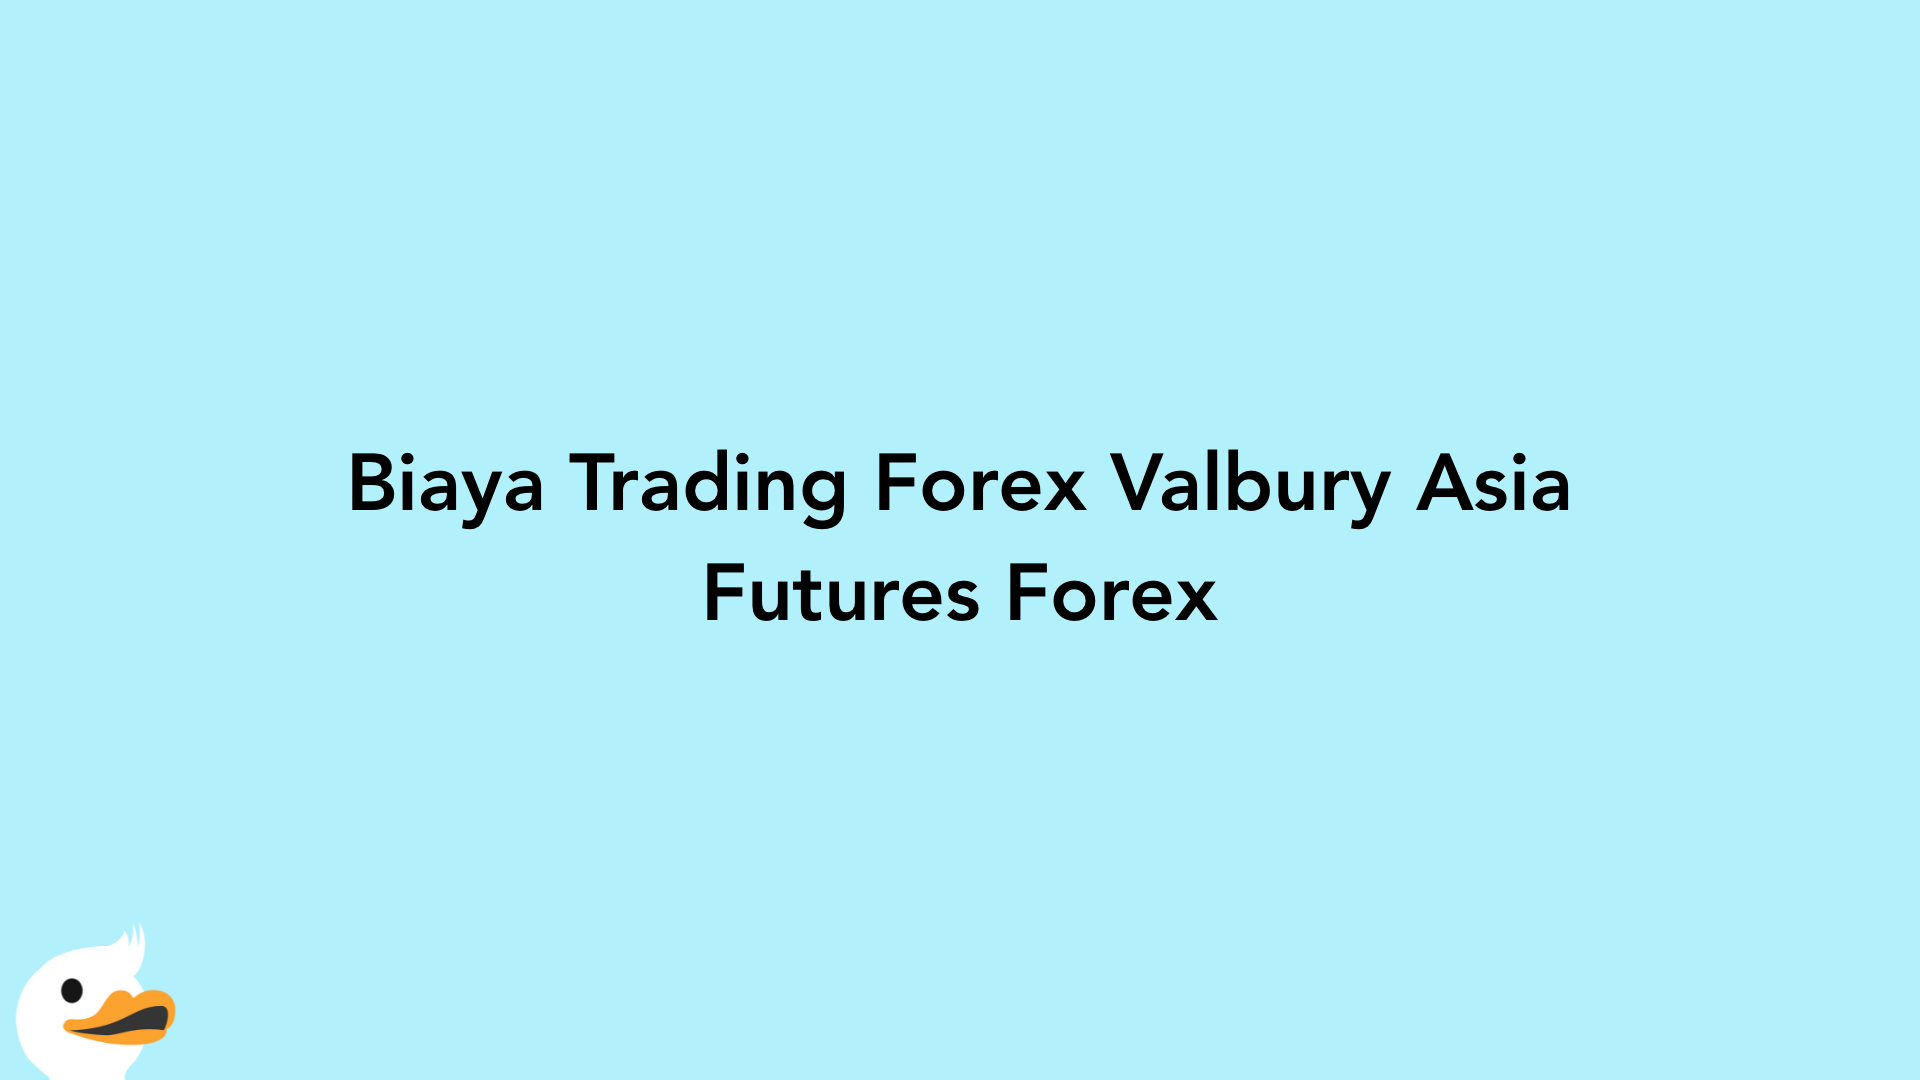 Biaya Trading Forex Valbury Asia Futures Forex